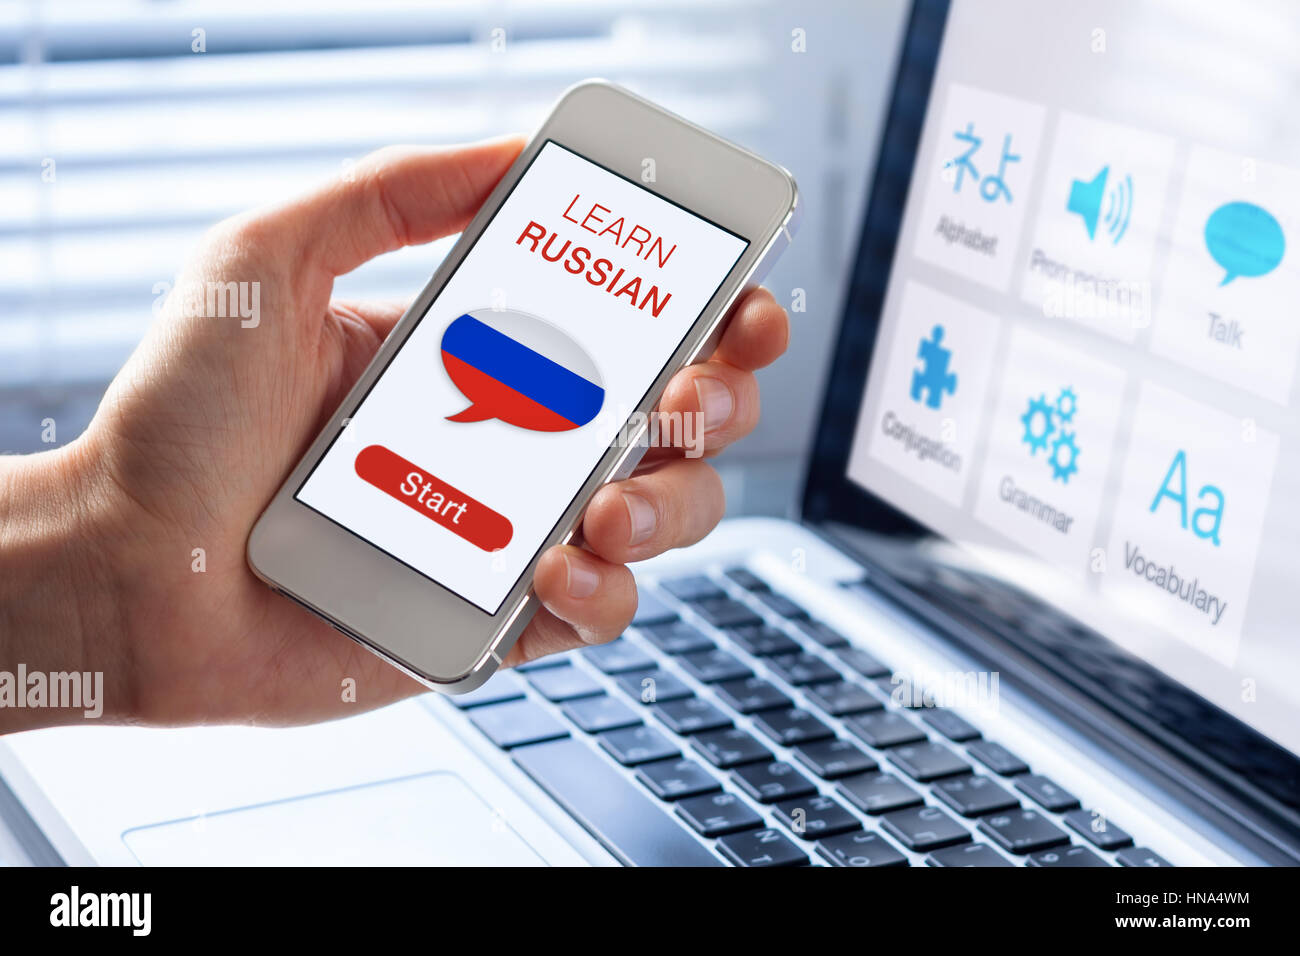 Apprendre le russe en ligne avec un concept de langue personne montrant l'e-learning application sur téléphone mobile avec le drapeau de la Russie Banque D'Images